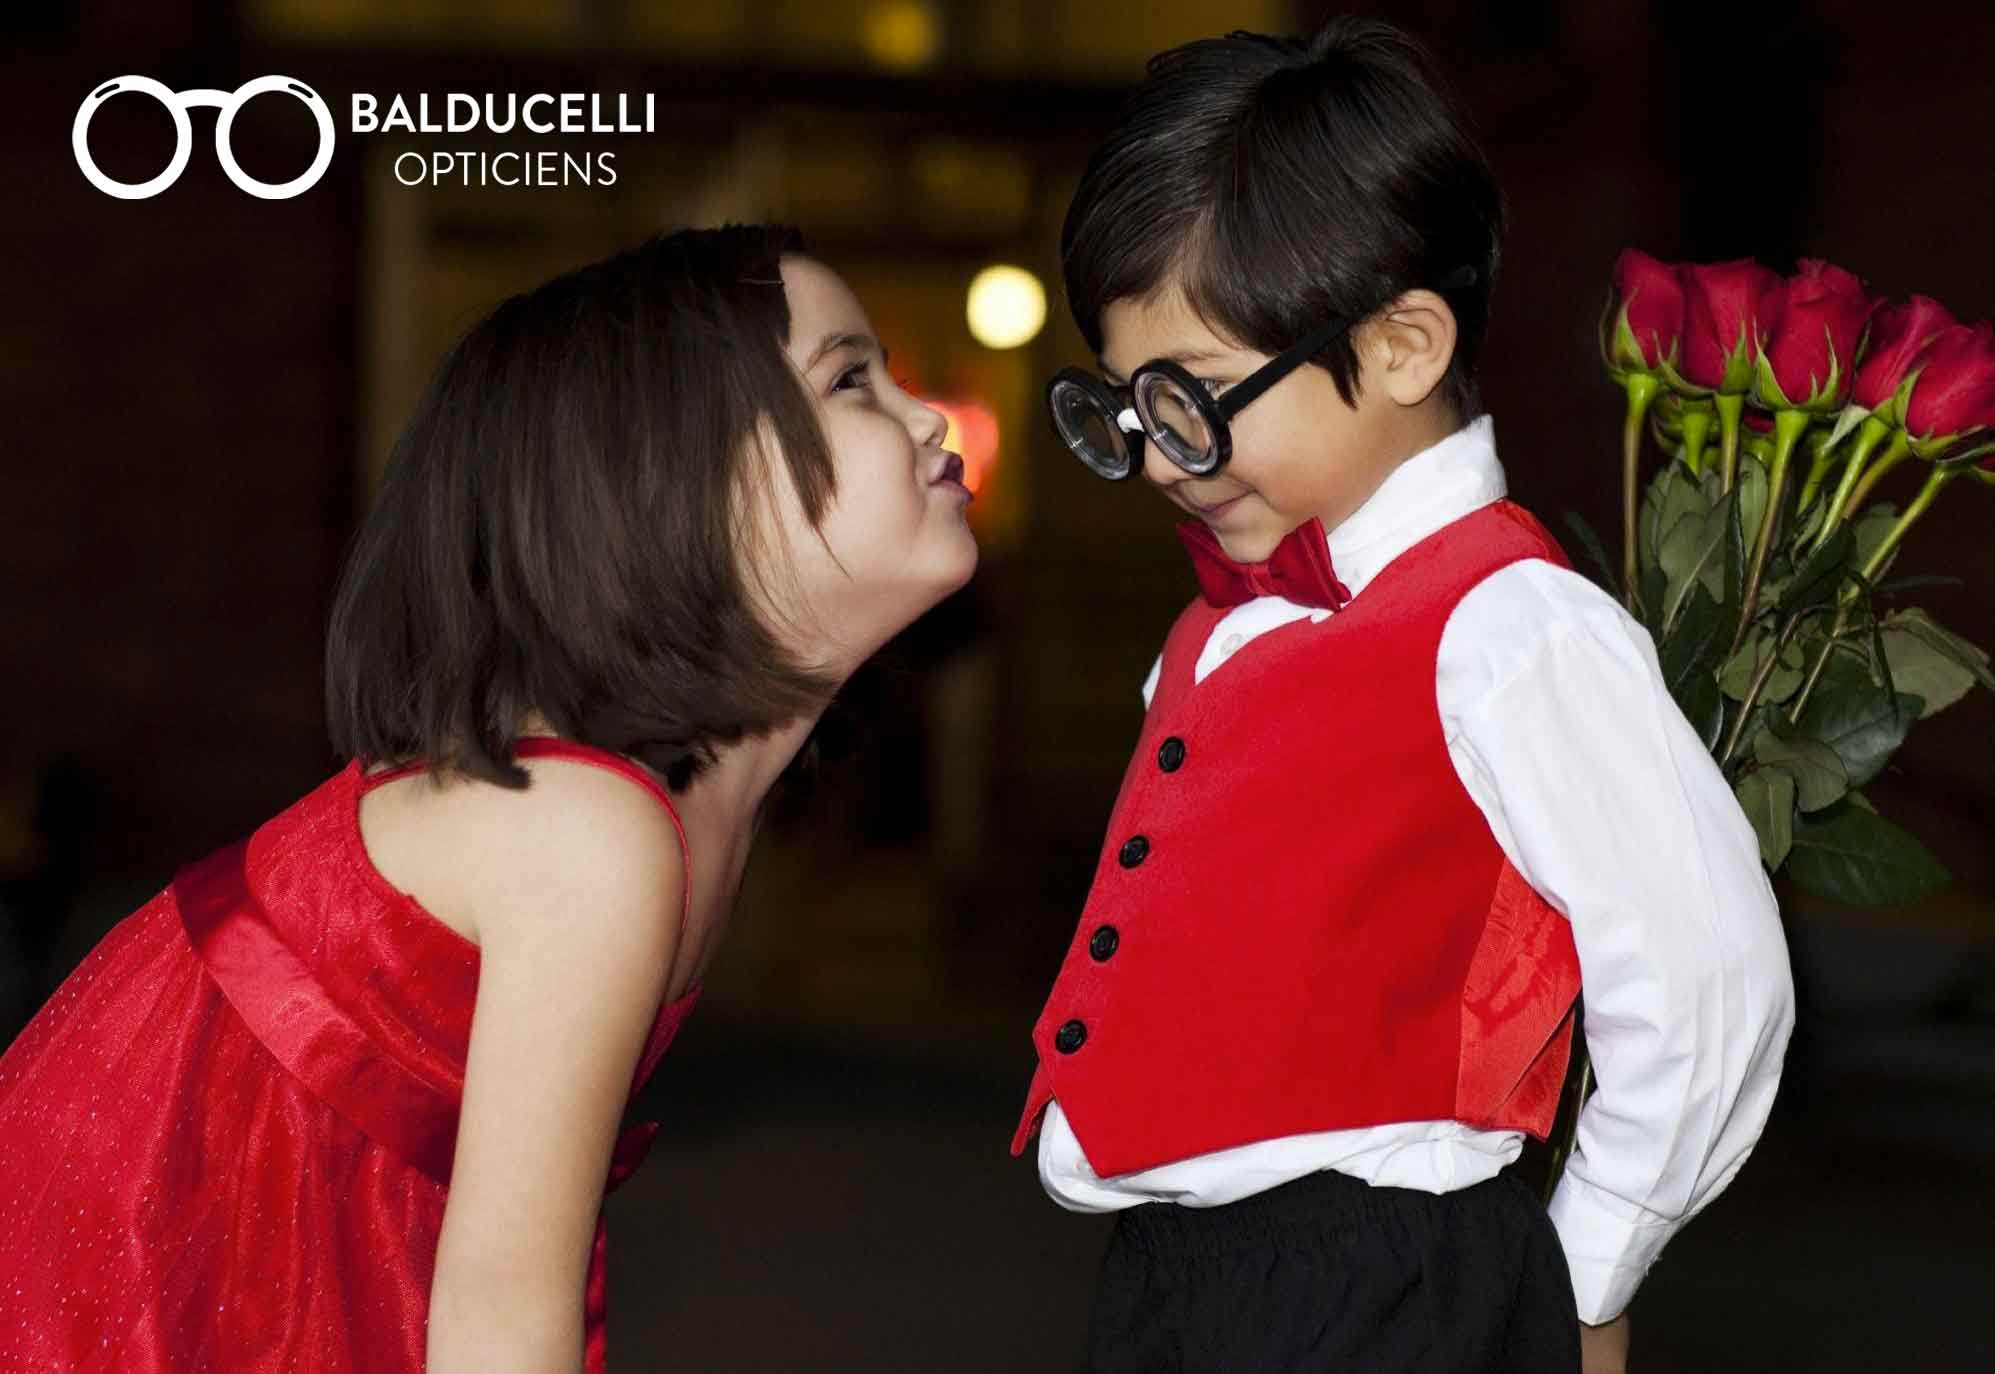 lunettes pour enfants choisir avec balducelli opticiens montbéliard fille garçon ados cadeaux fleurs